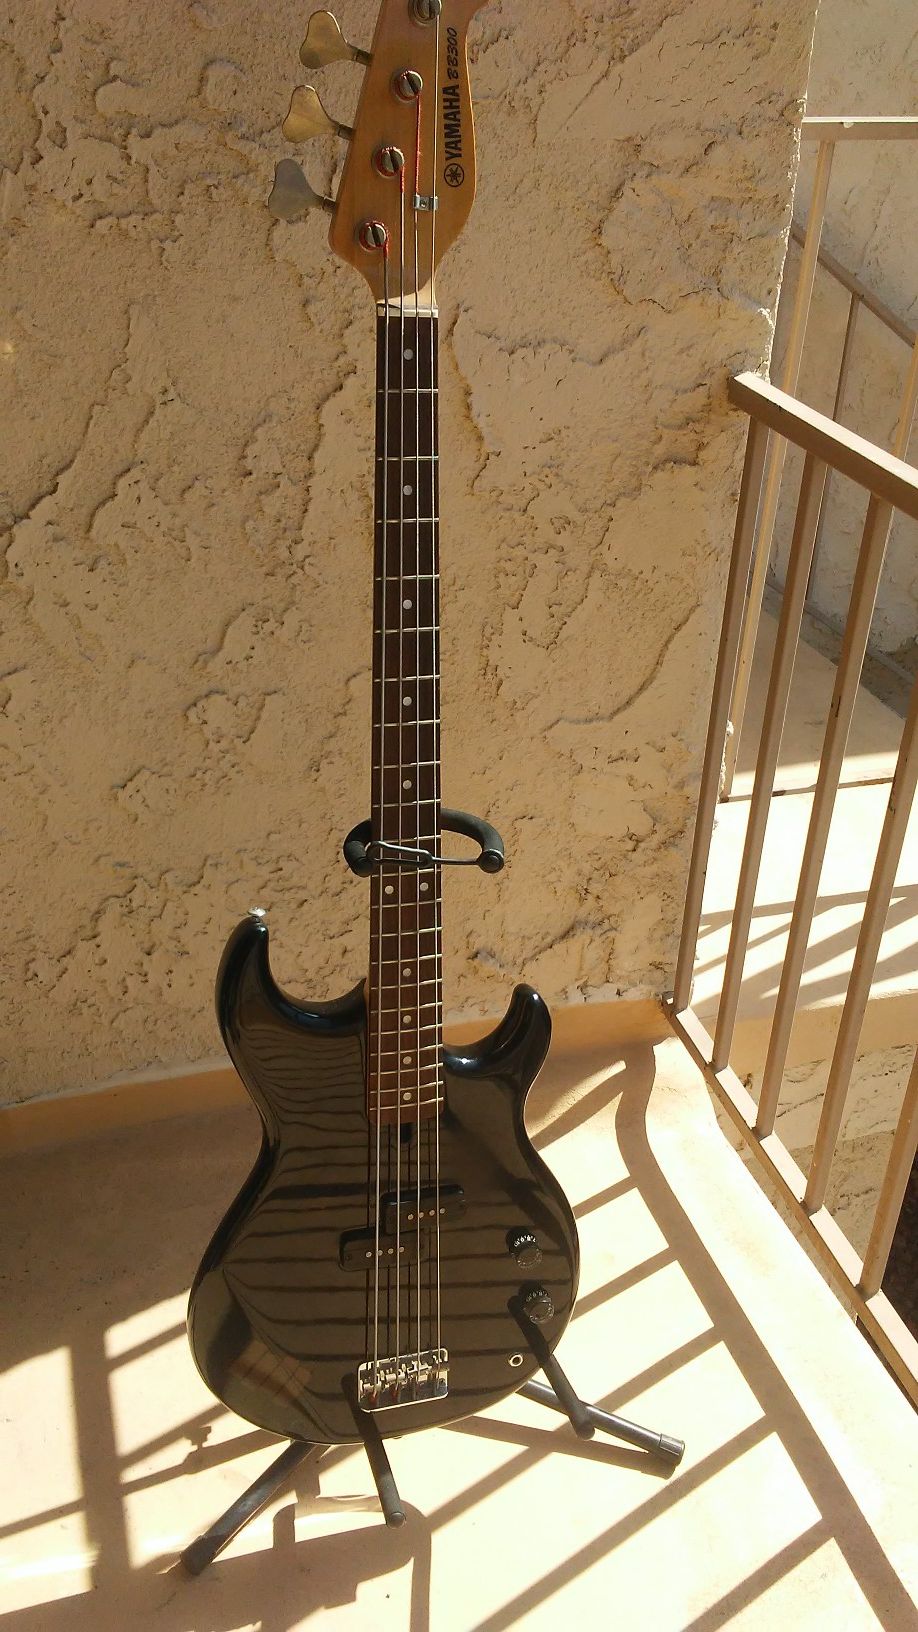 Yamaha BB300 Bass Guitar with black original case